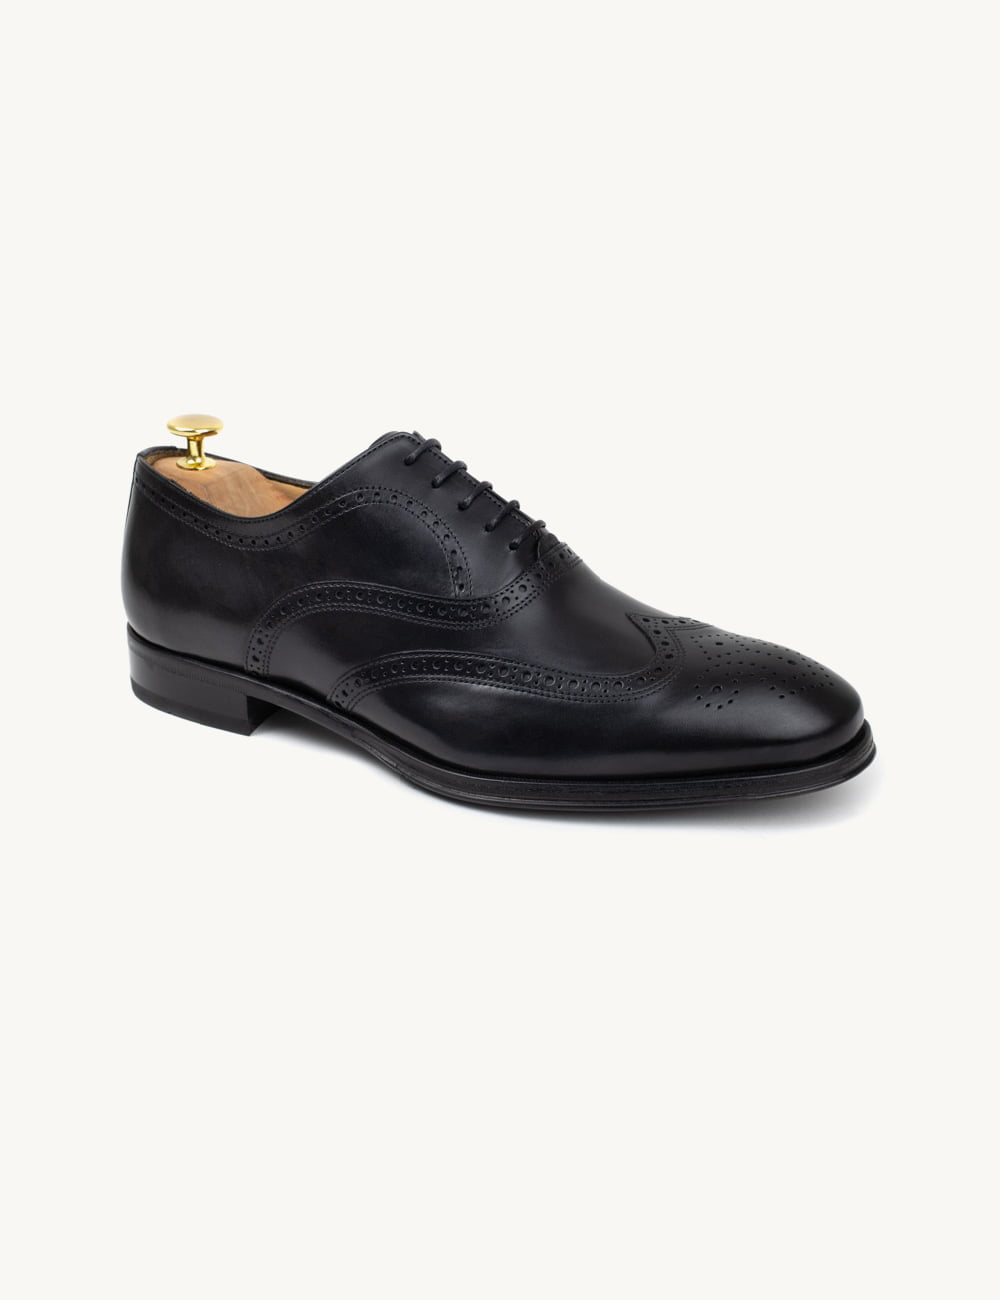 Sapatos Oxford com Brogues confortáveis - feitos à mão e em pele genuína.